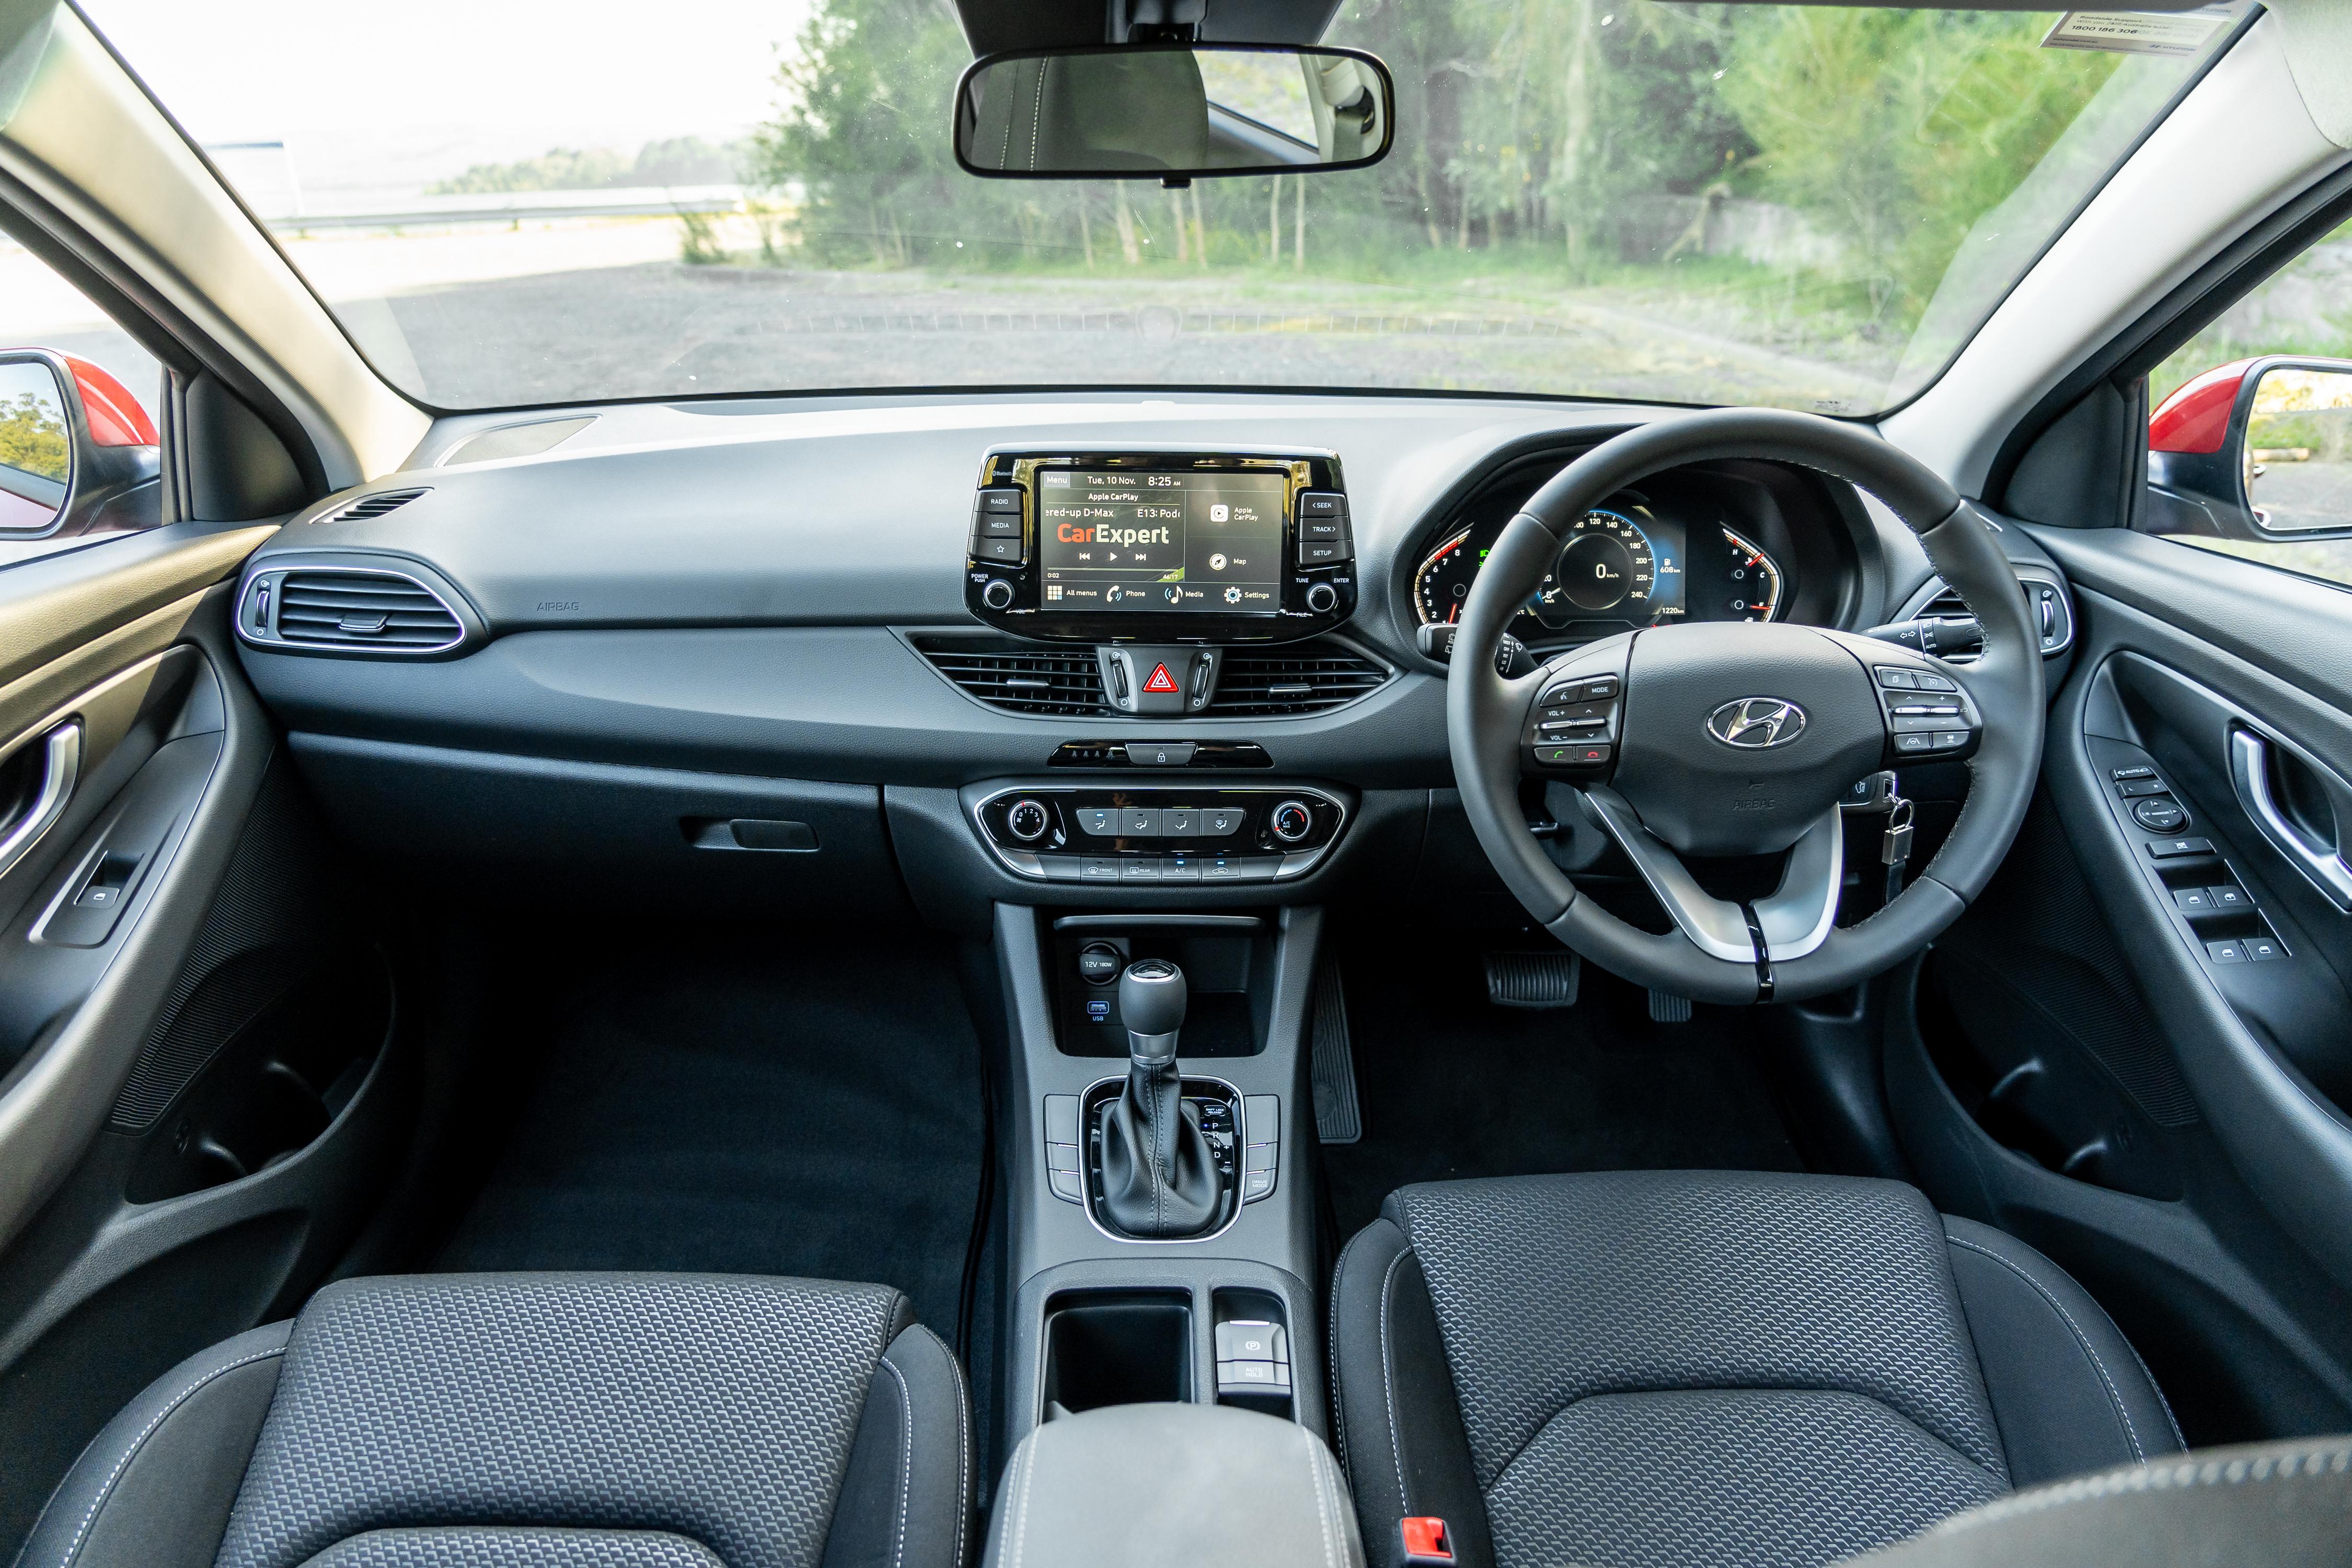 2021 Hyundai i30 Hatch review